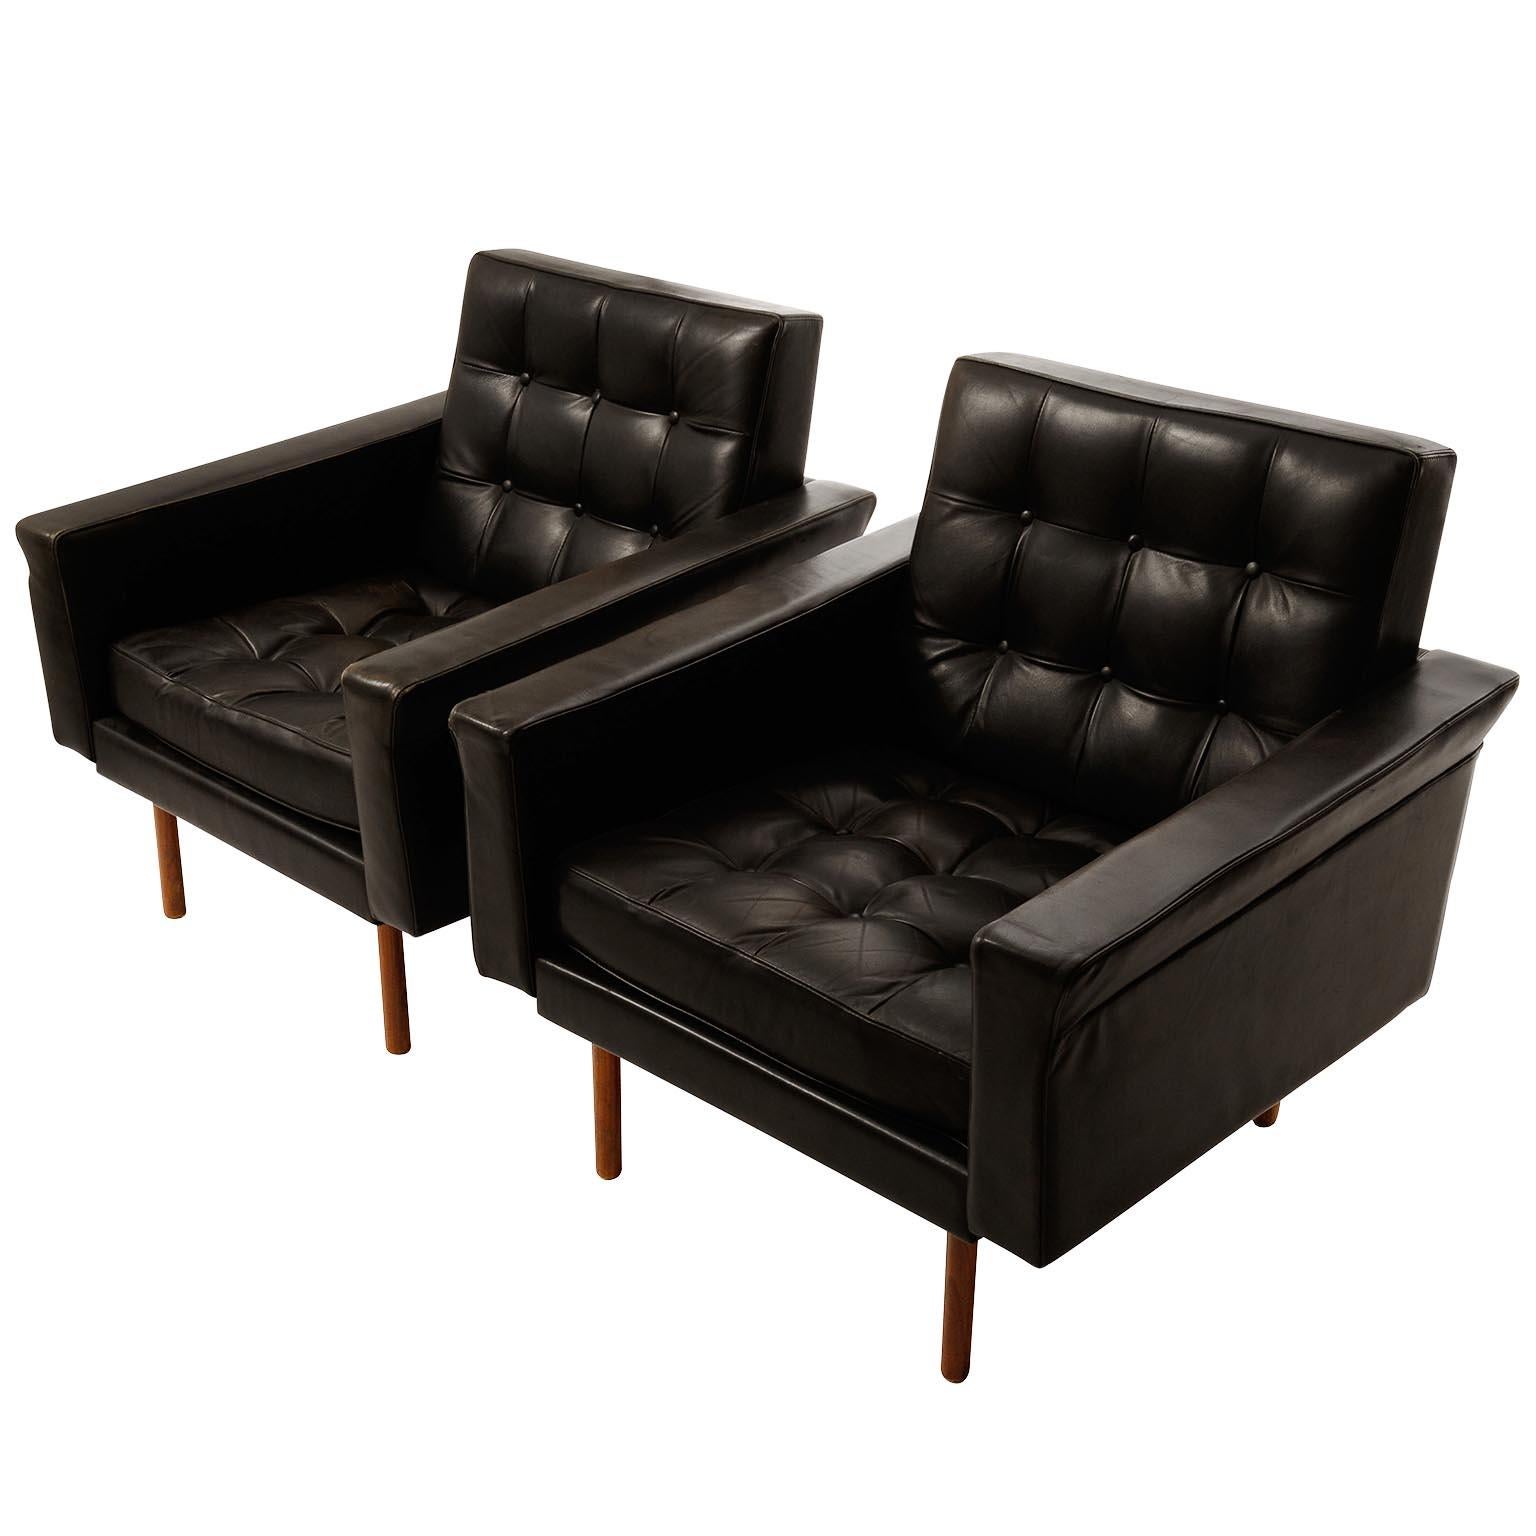 Ein Paar Sessel mit getuftetem schwarzem Leder und Teakholzbeinen, entworfen von Prof. Johannes Spalt für Wittmann, Österreich, hergestellt in der Mitte des Jahrhunderts, um 1960.
Die dünnen Beine lassen die Stücke fast frei schweben.
Die Stühle